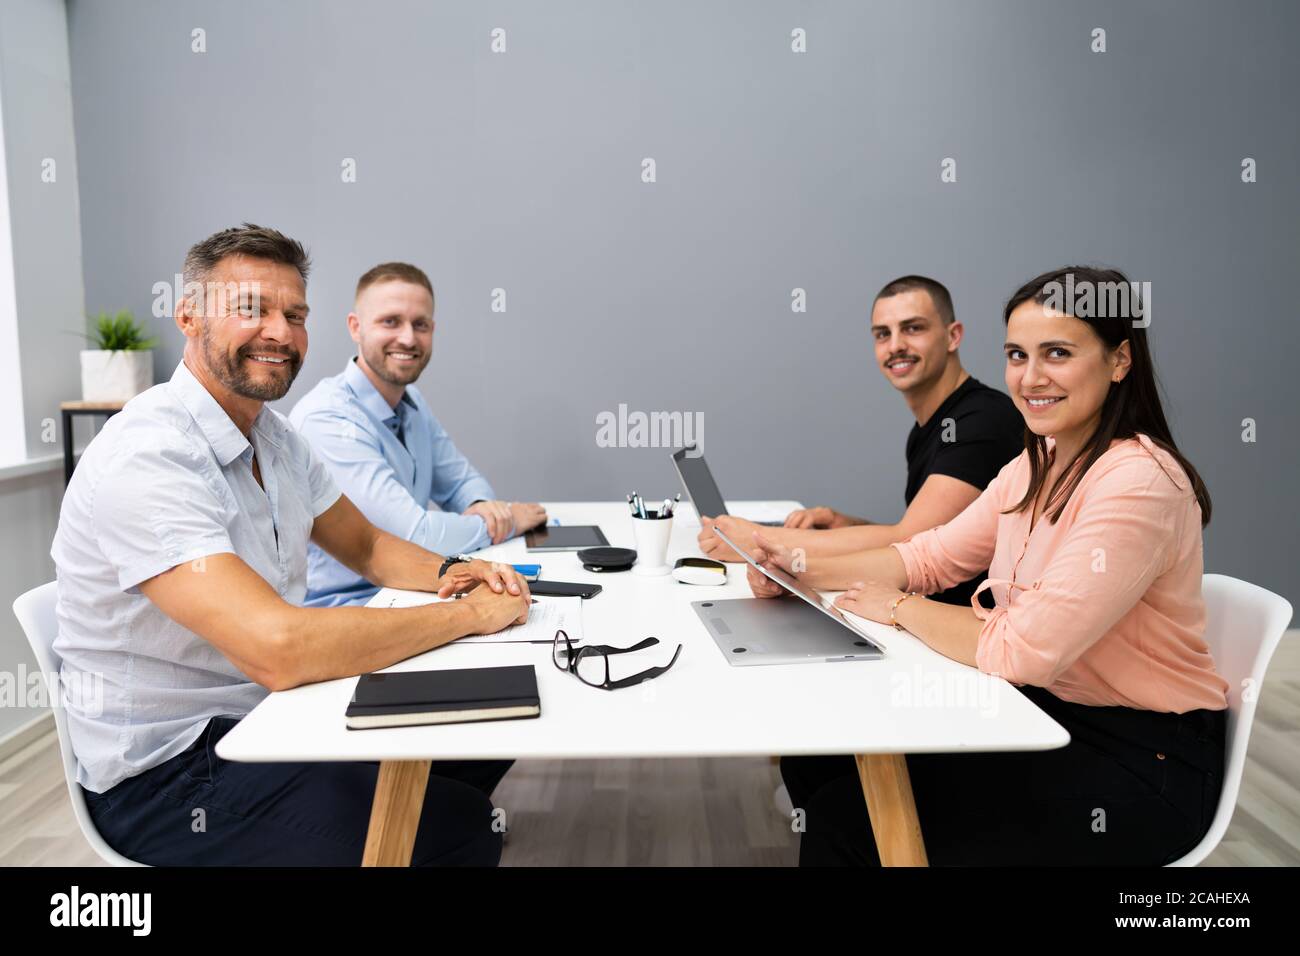 Smart Business People Team che collabora in ufficio Foto Stock